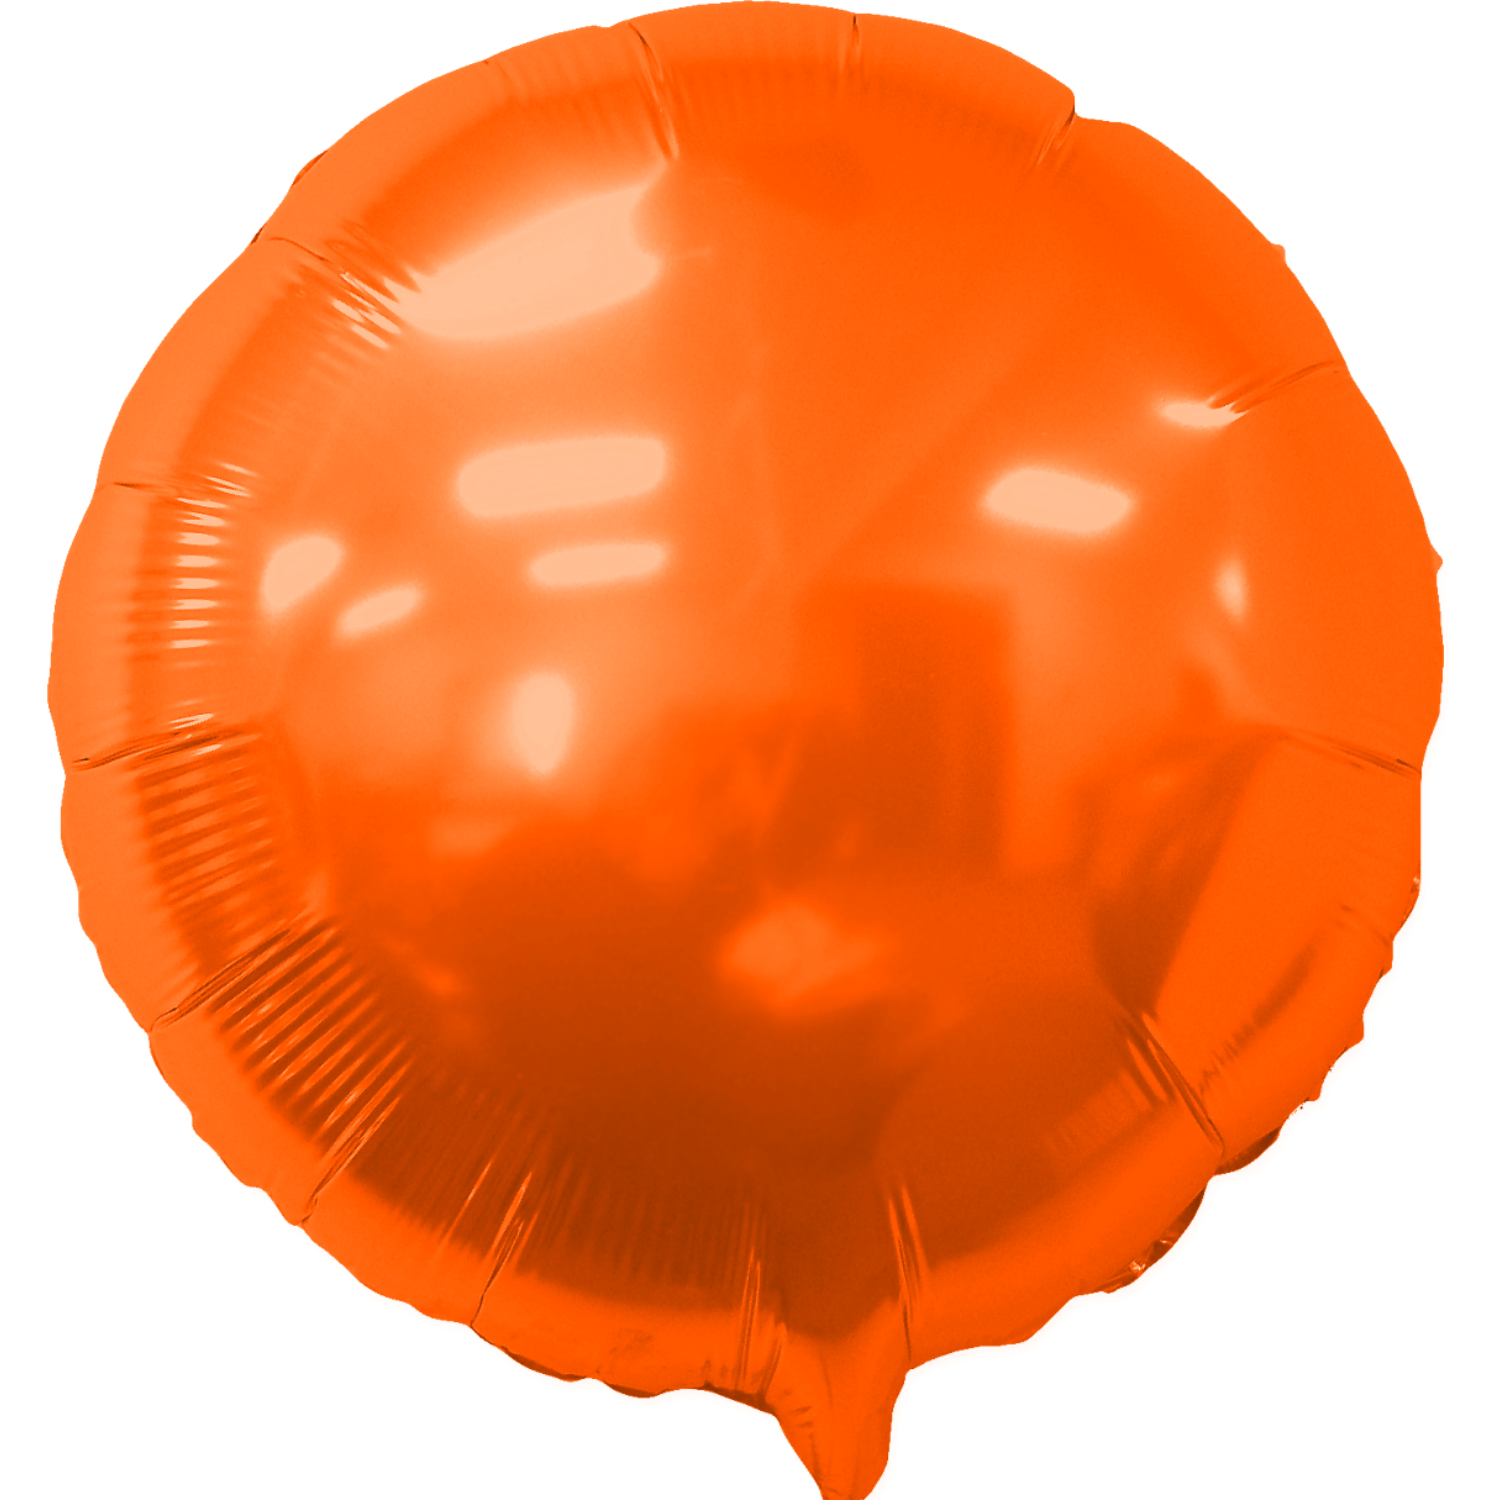 http://images.officebrain.com/migration-api-hidden-new/web/images/626/myrn-round-orange.png